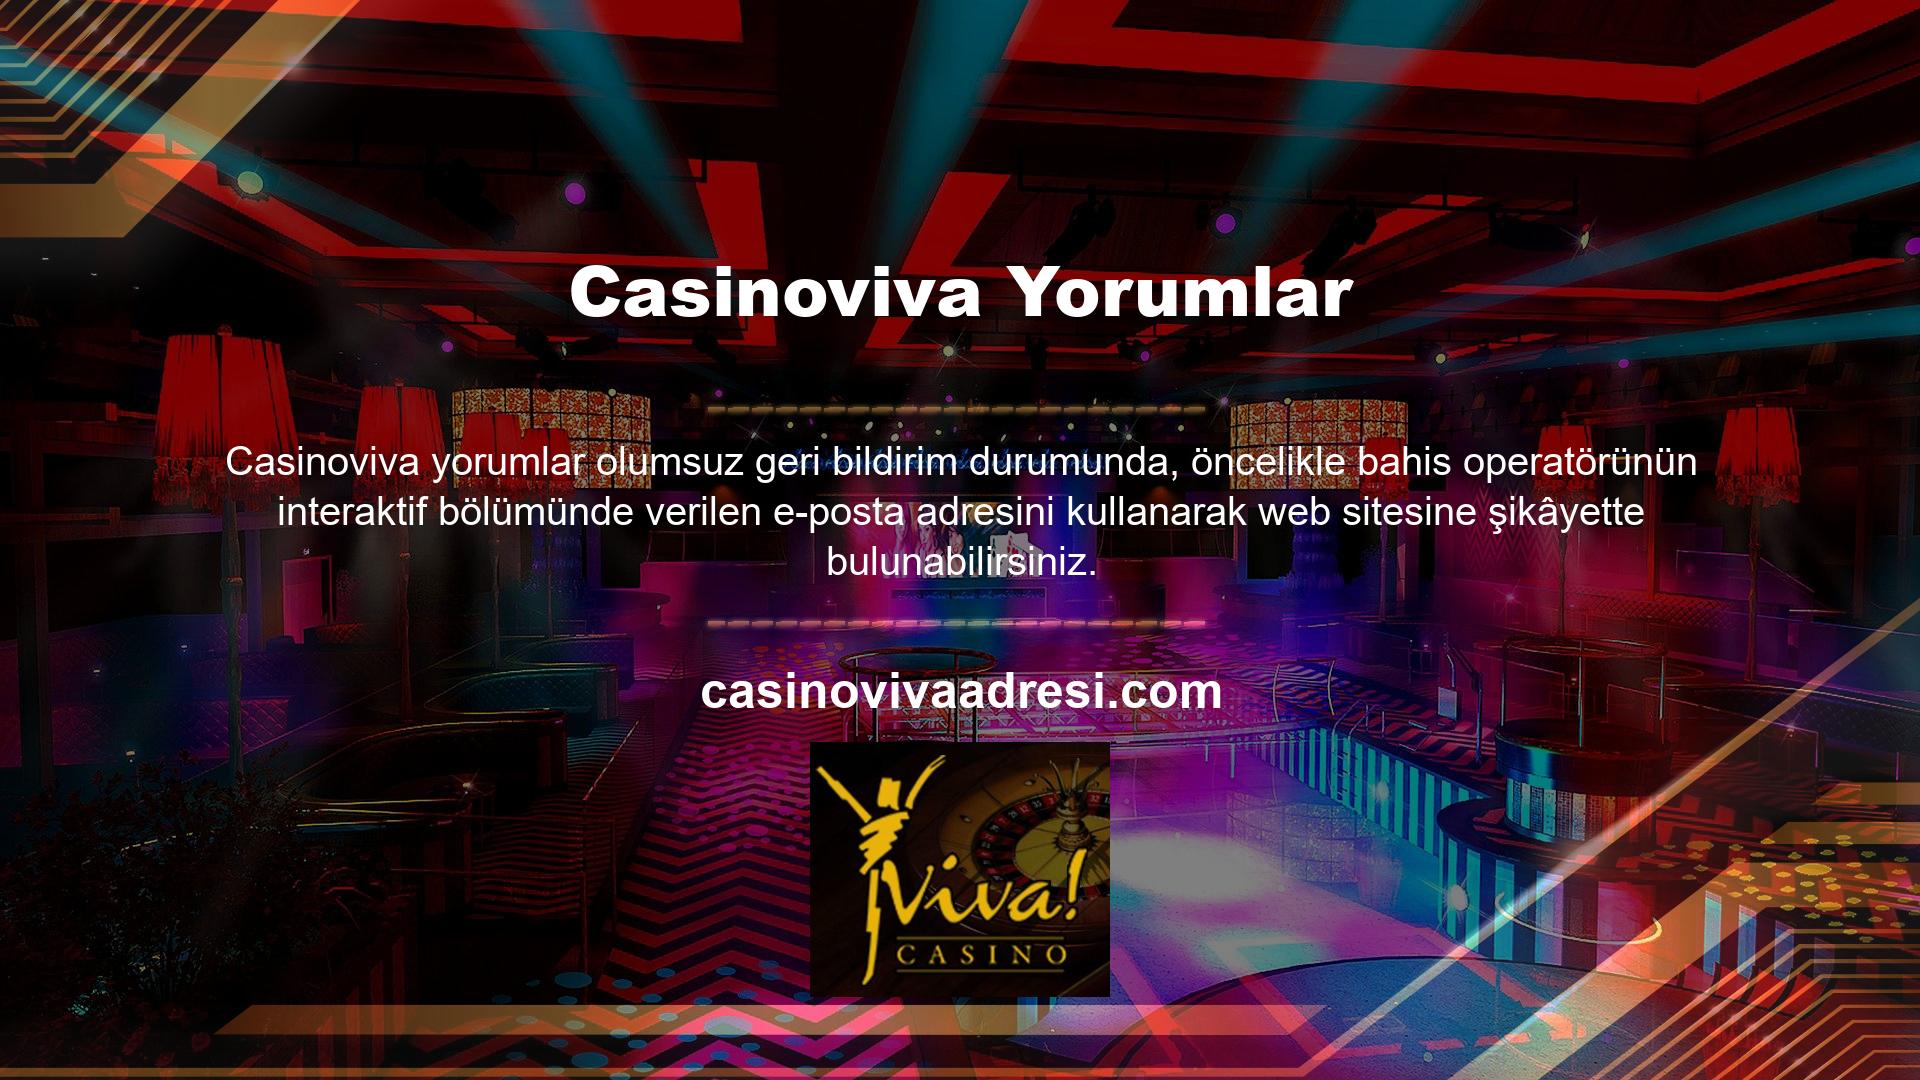 Aynı zamanda Casinoviva sitesinde yer alan bildirim yoluyla bahis sitesinin canlı destek ve şikâyet hattı üzerinden şikâyetinizi iletebilir ve gerekli şikâyetlerinizi bu hat üzerinden iletebilirsiniz